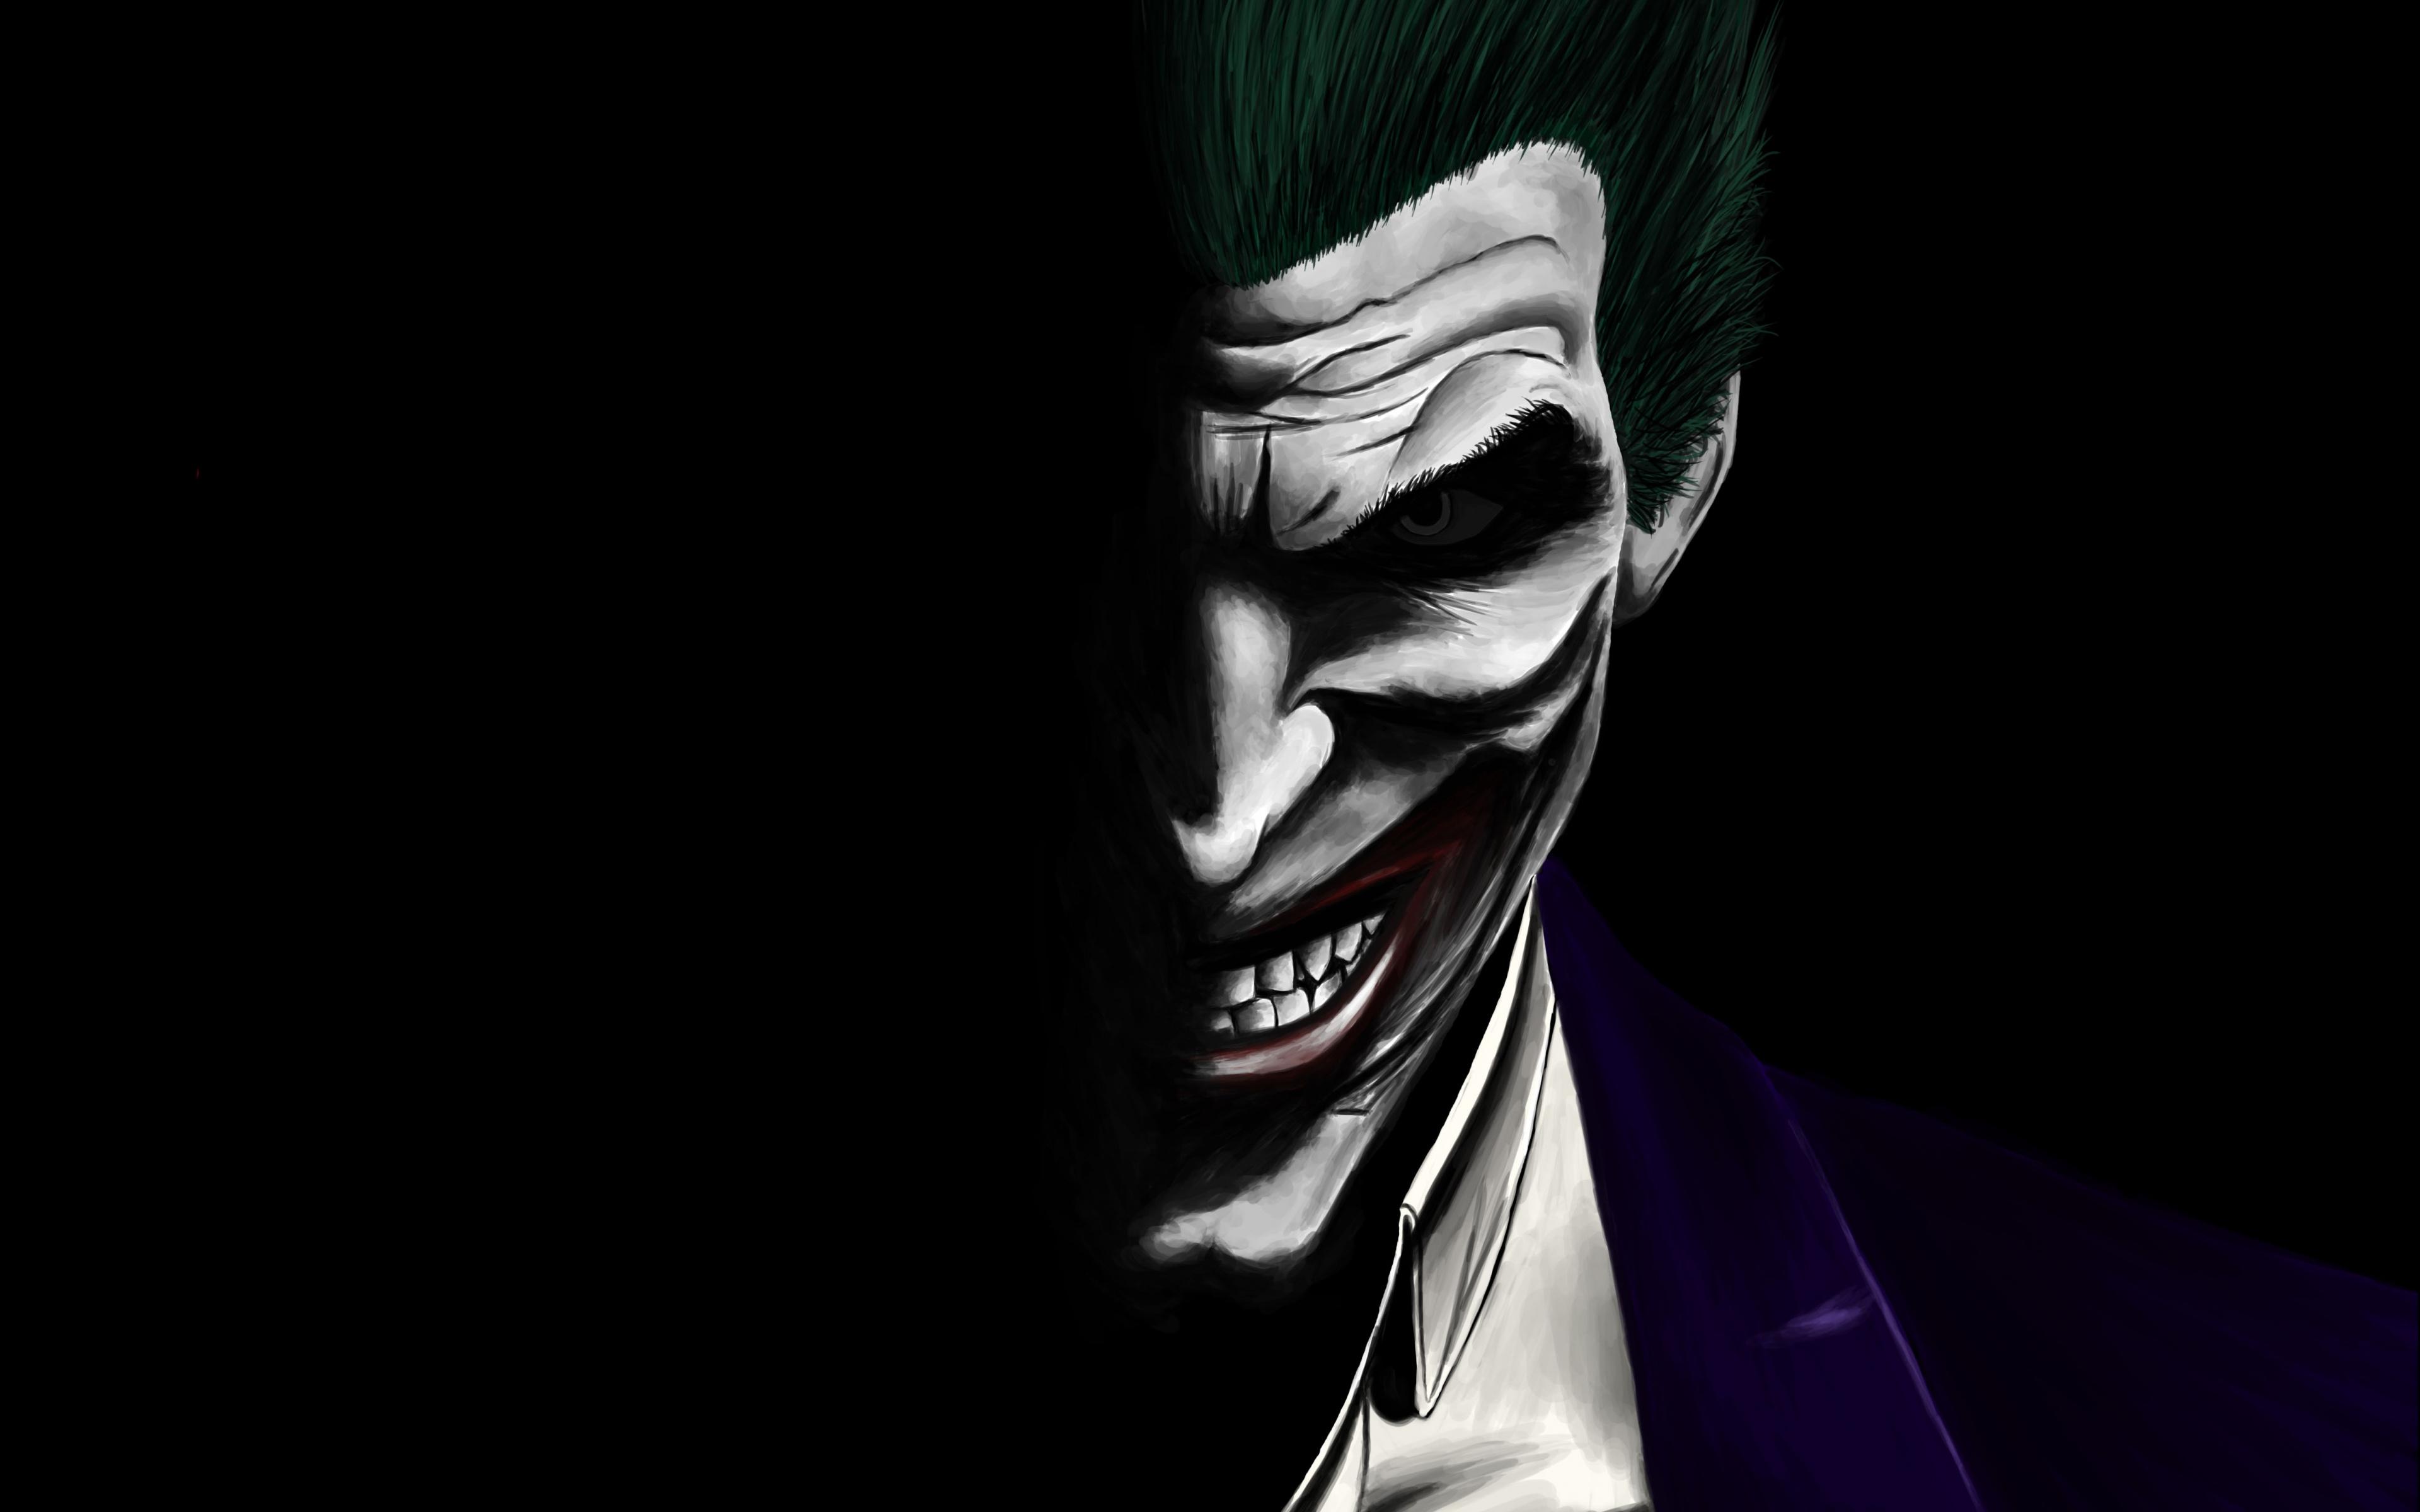 4k Wallpaper Of Joker Wallpaper For Desktop Background